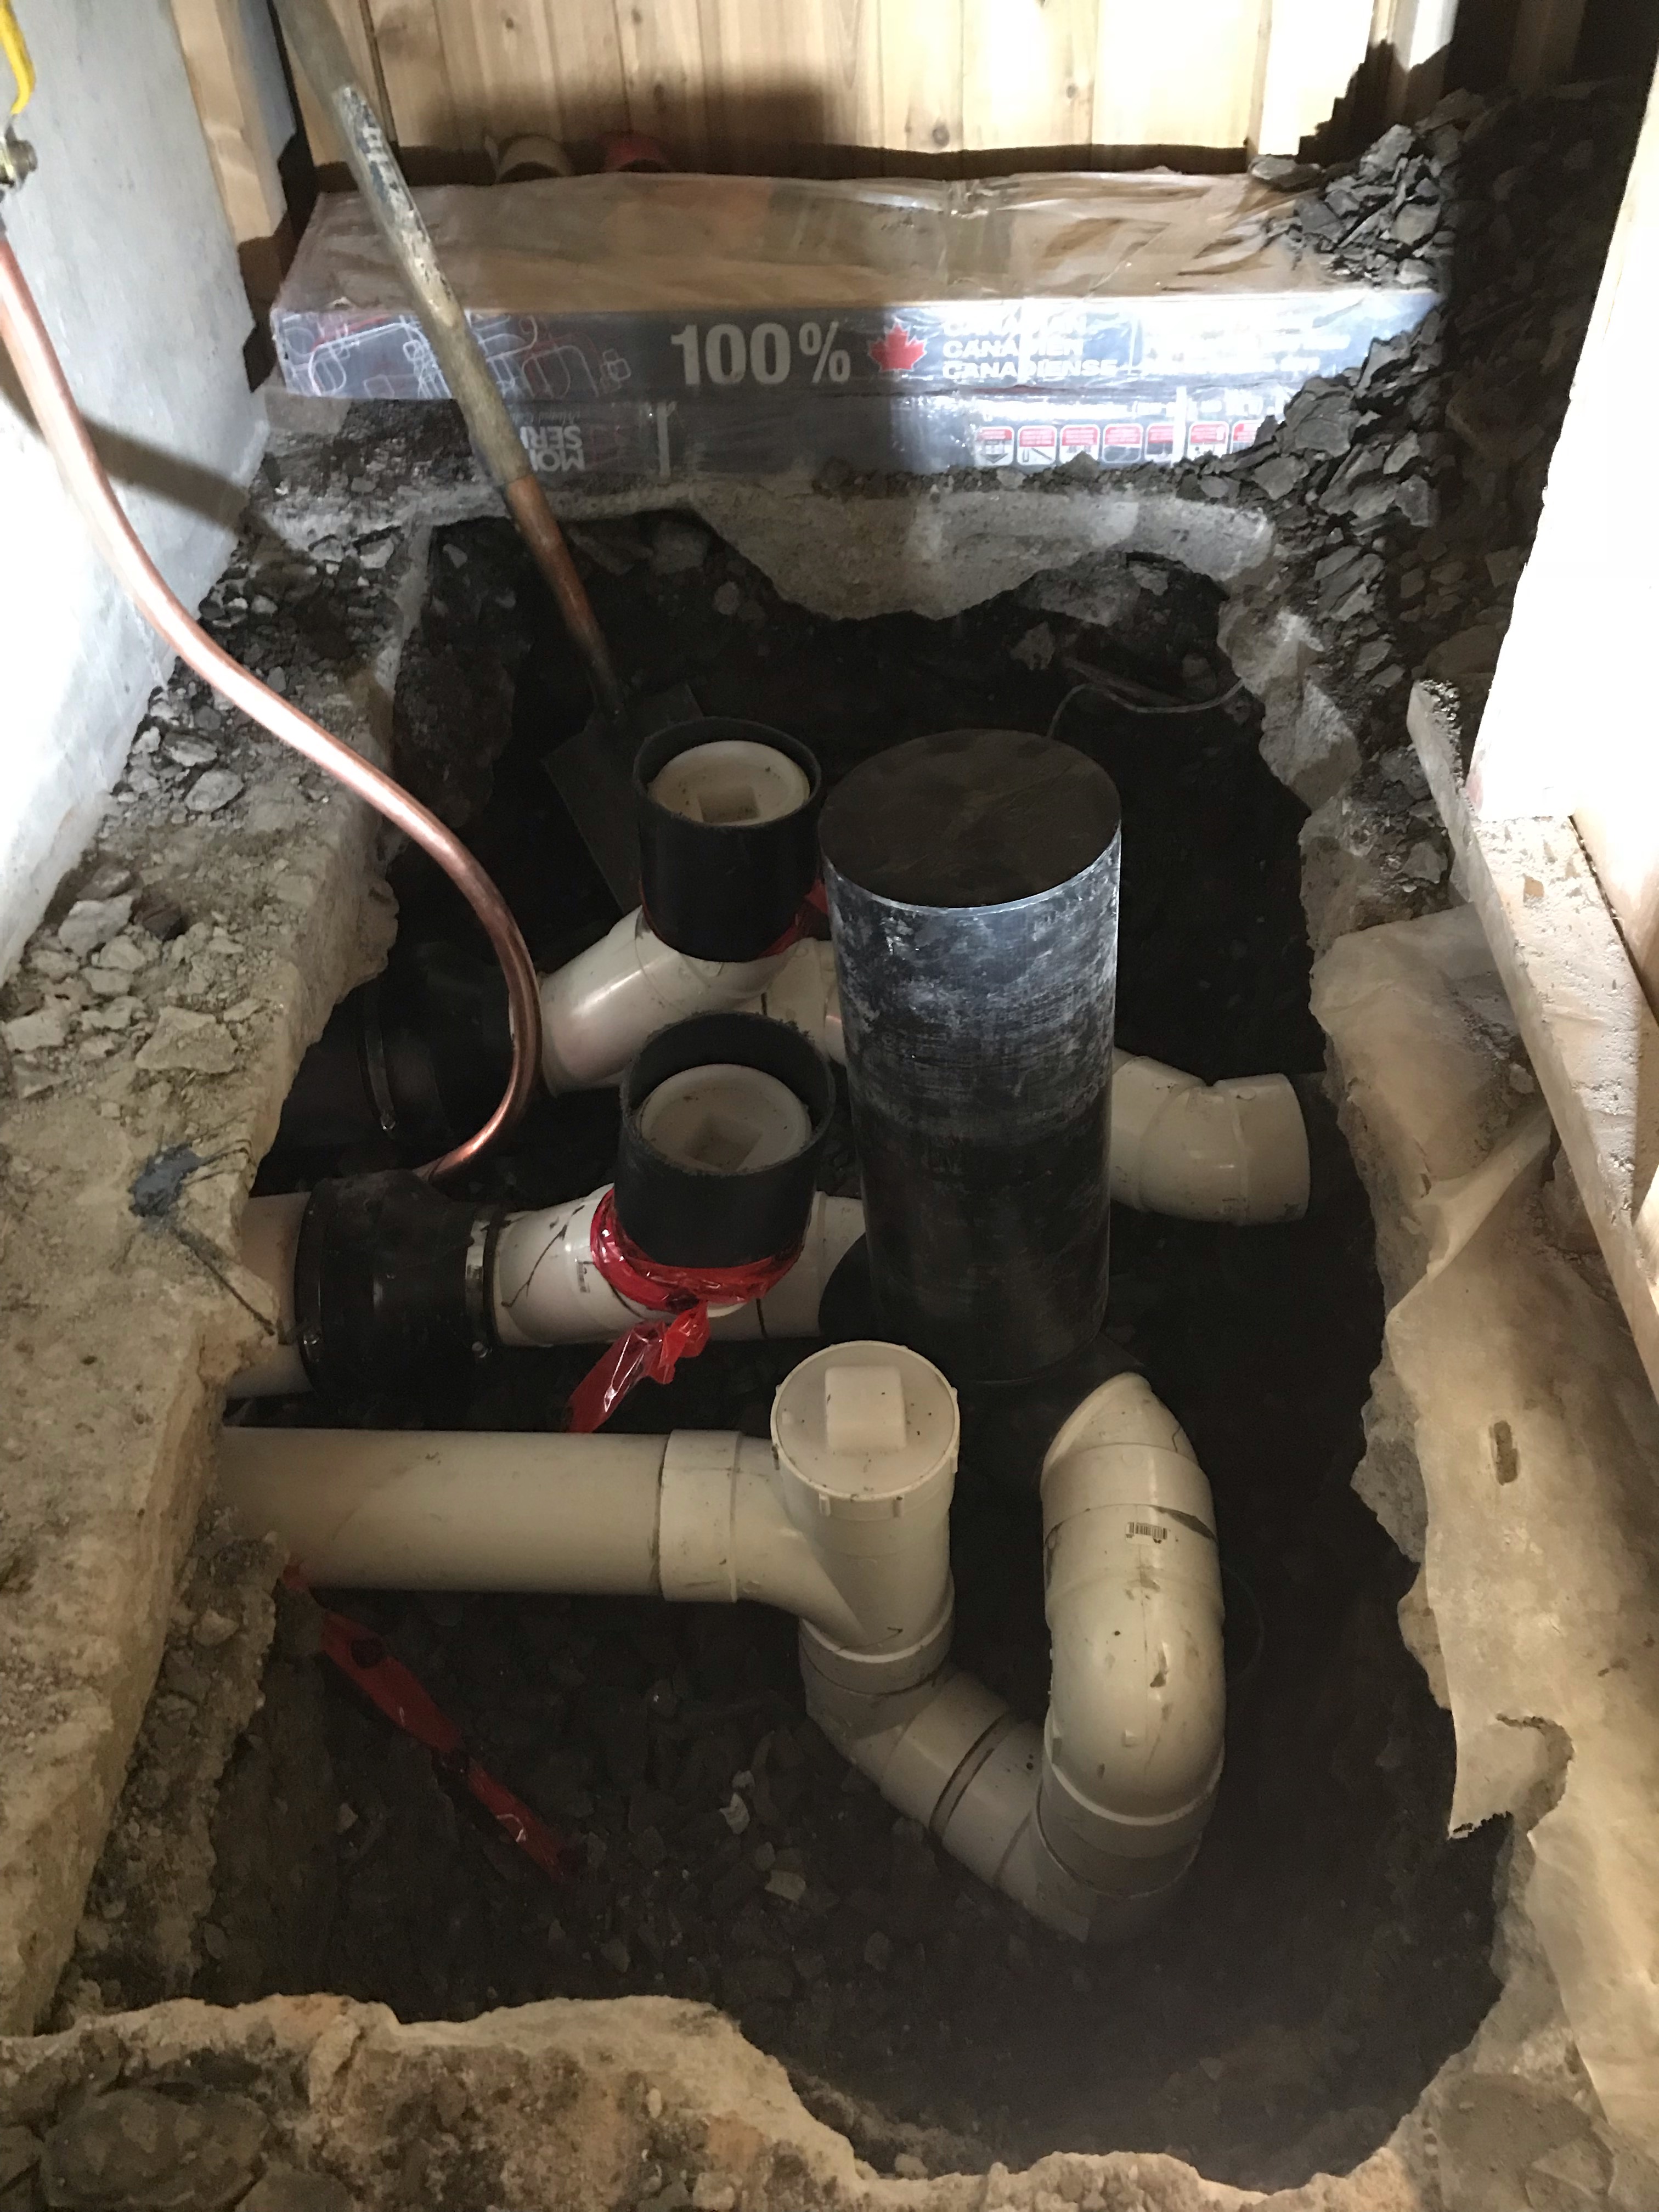 Installation de clapet anti retour - Les plombiers ont soigneusement installé un clapet anti retour pour éviter un refoulement d’égout à Candiac